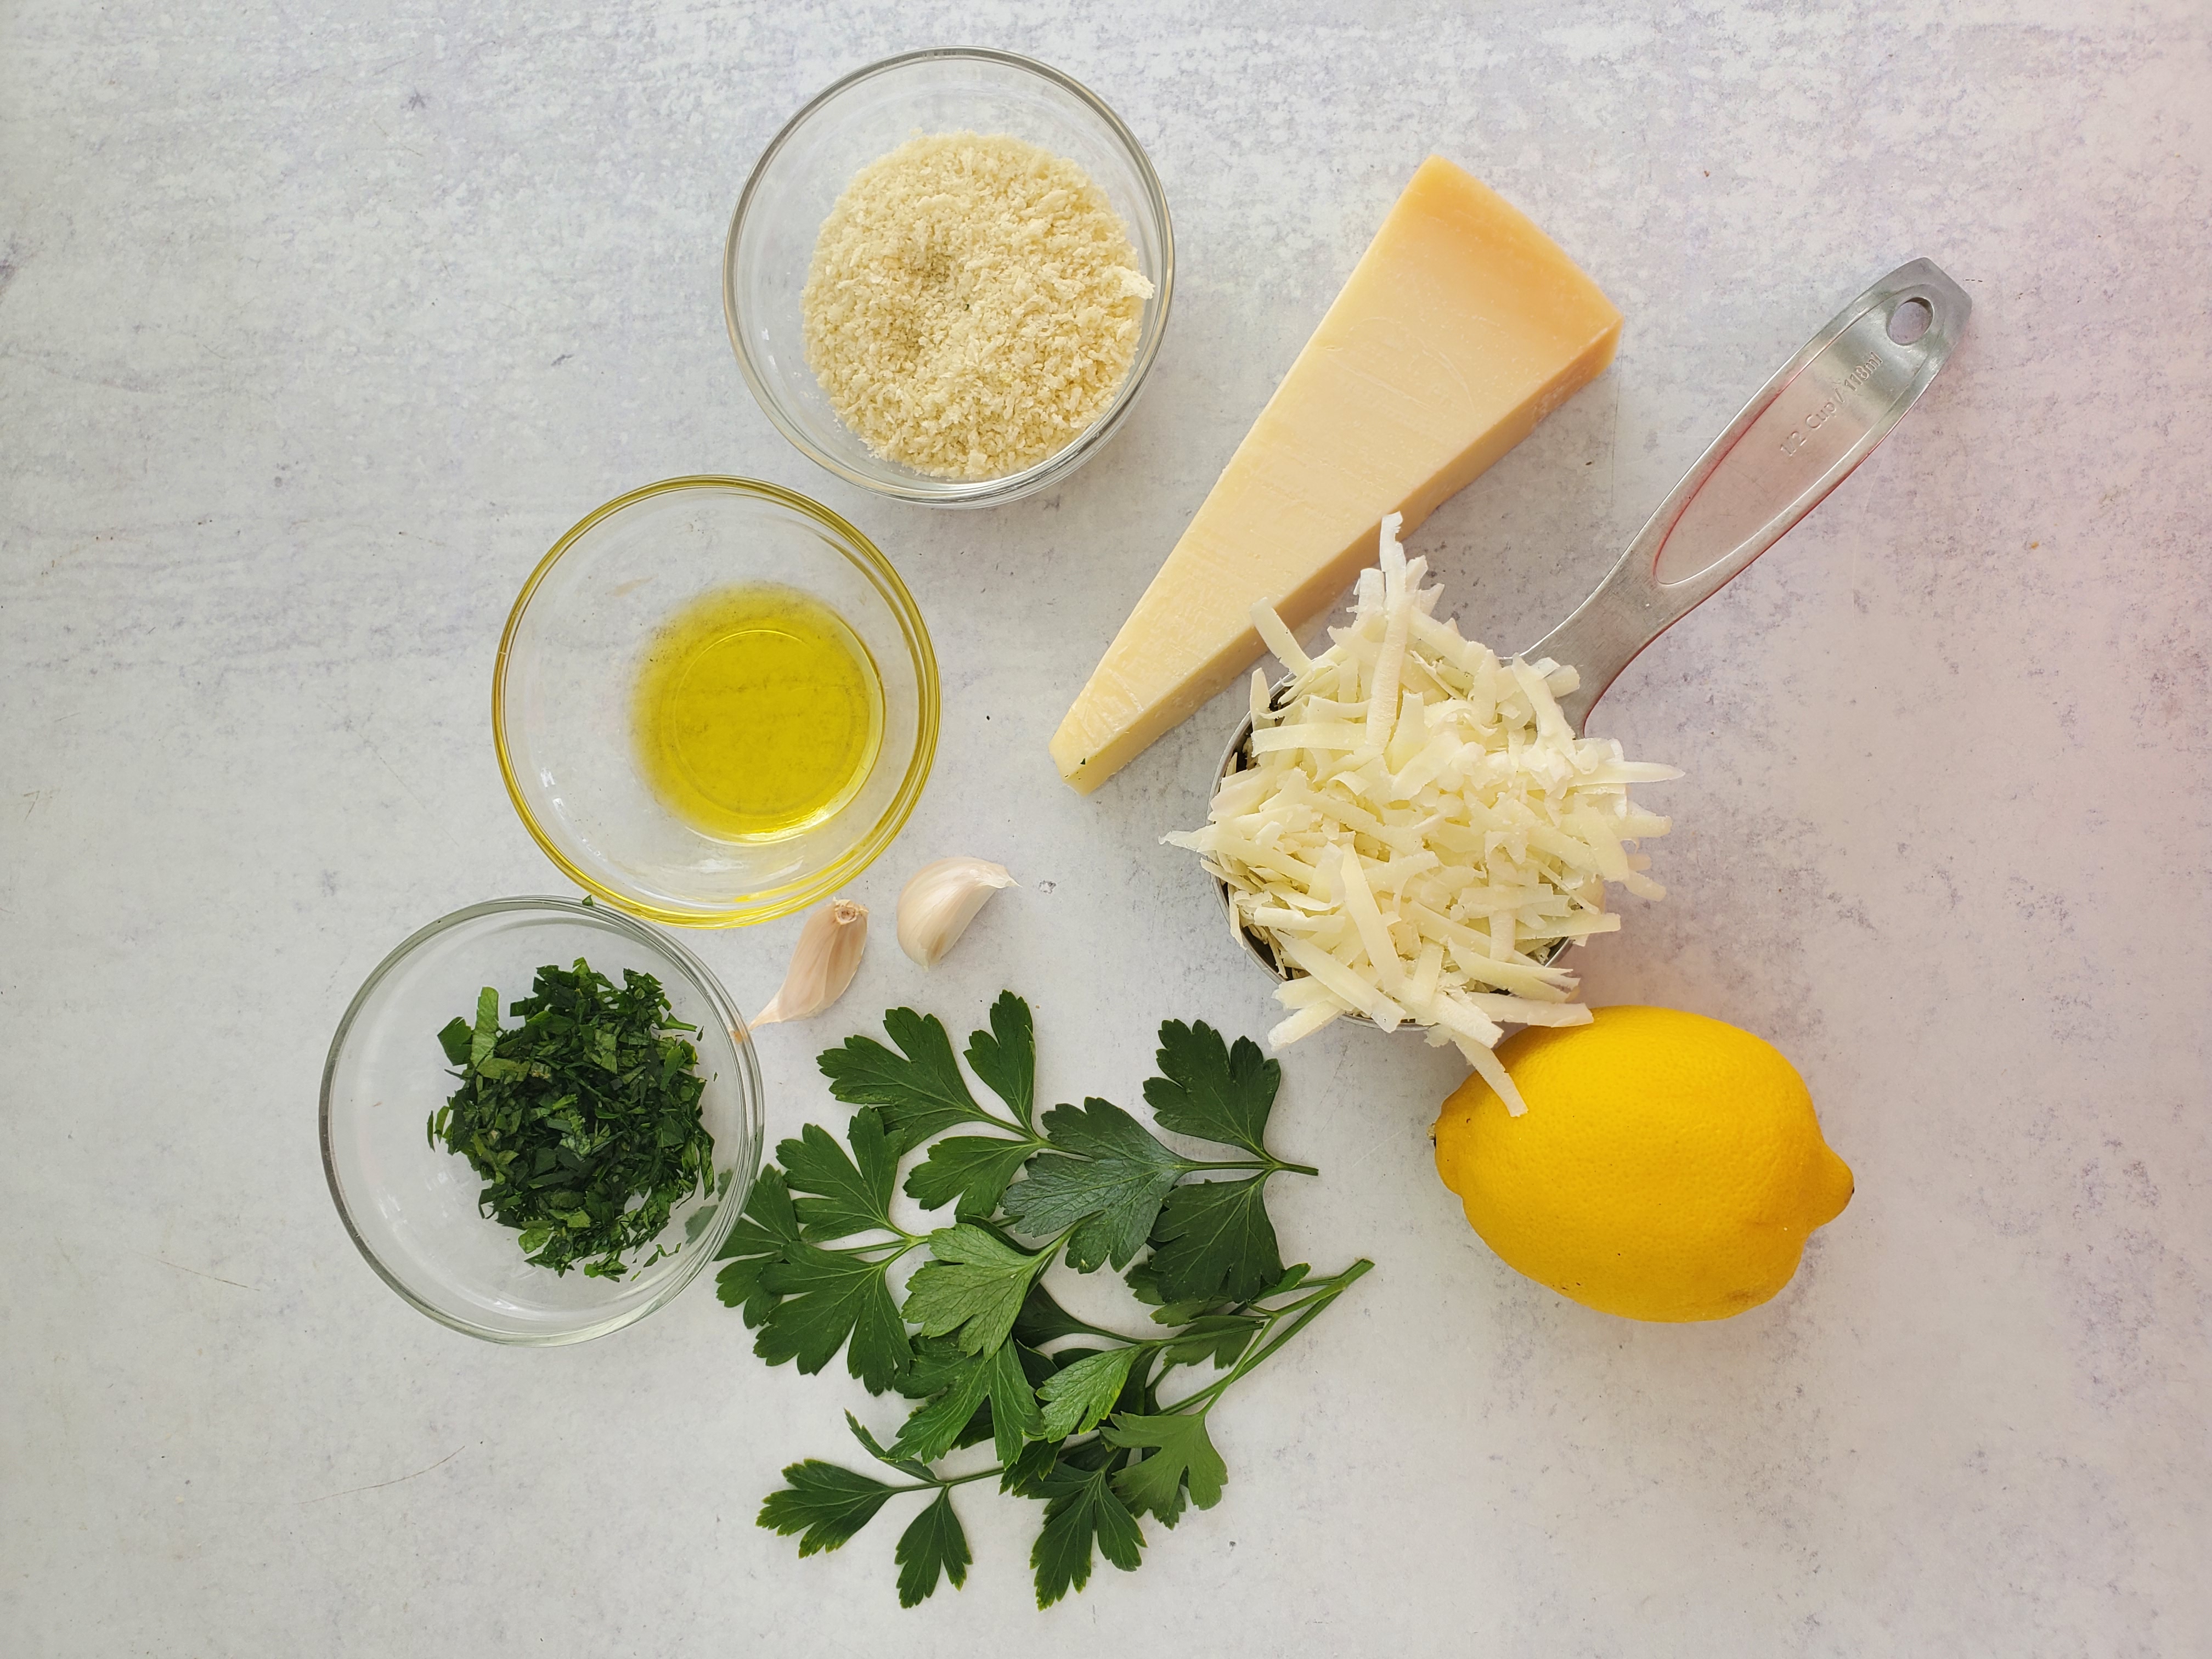 ingredients: lemon juice, parmesan cheese, parsley, panko